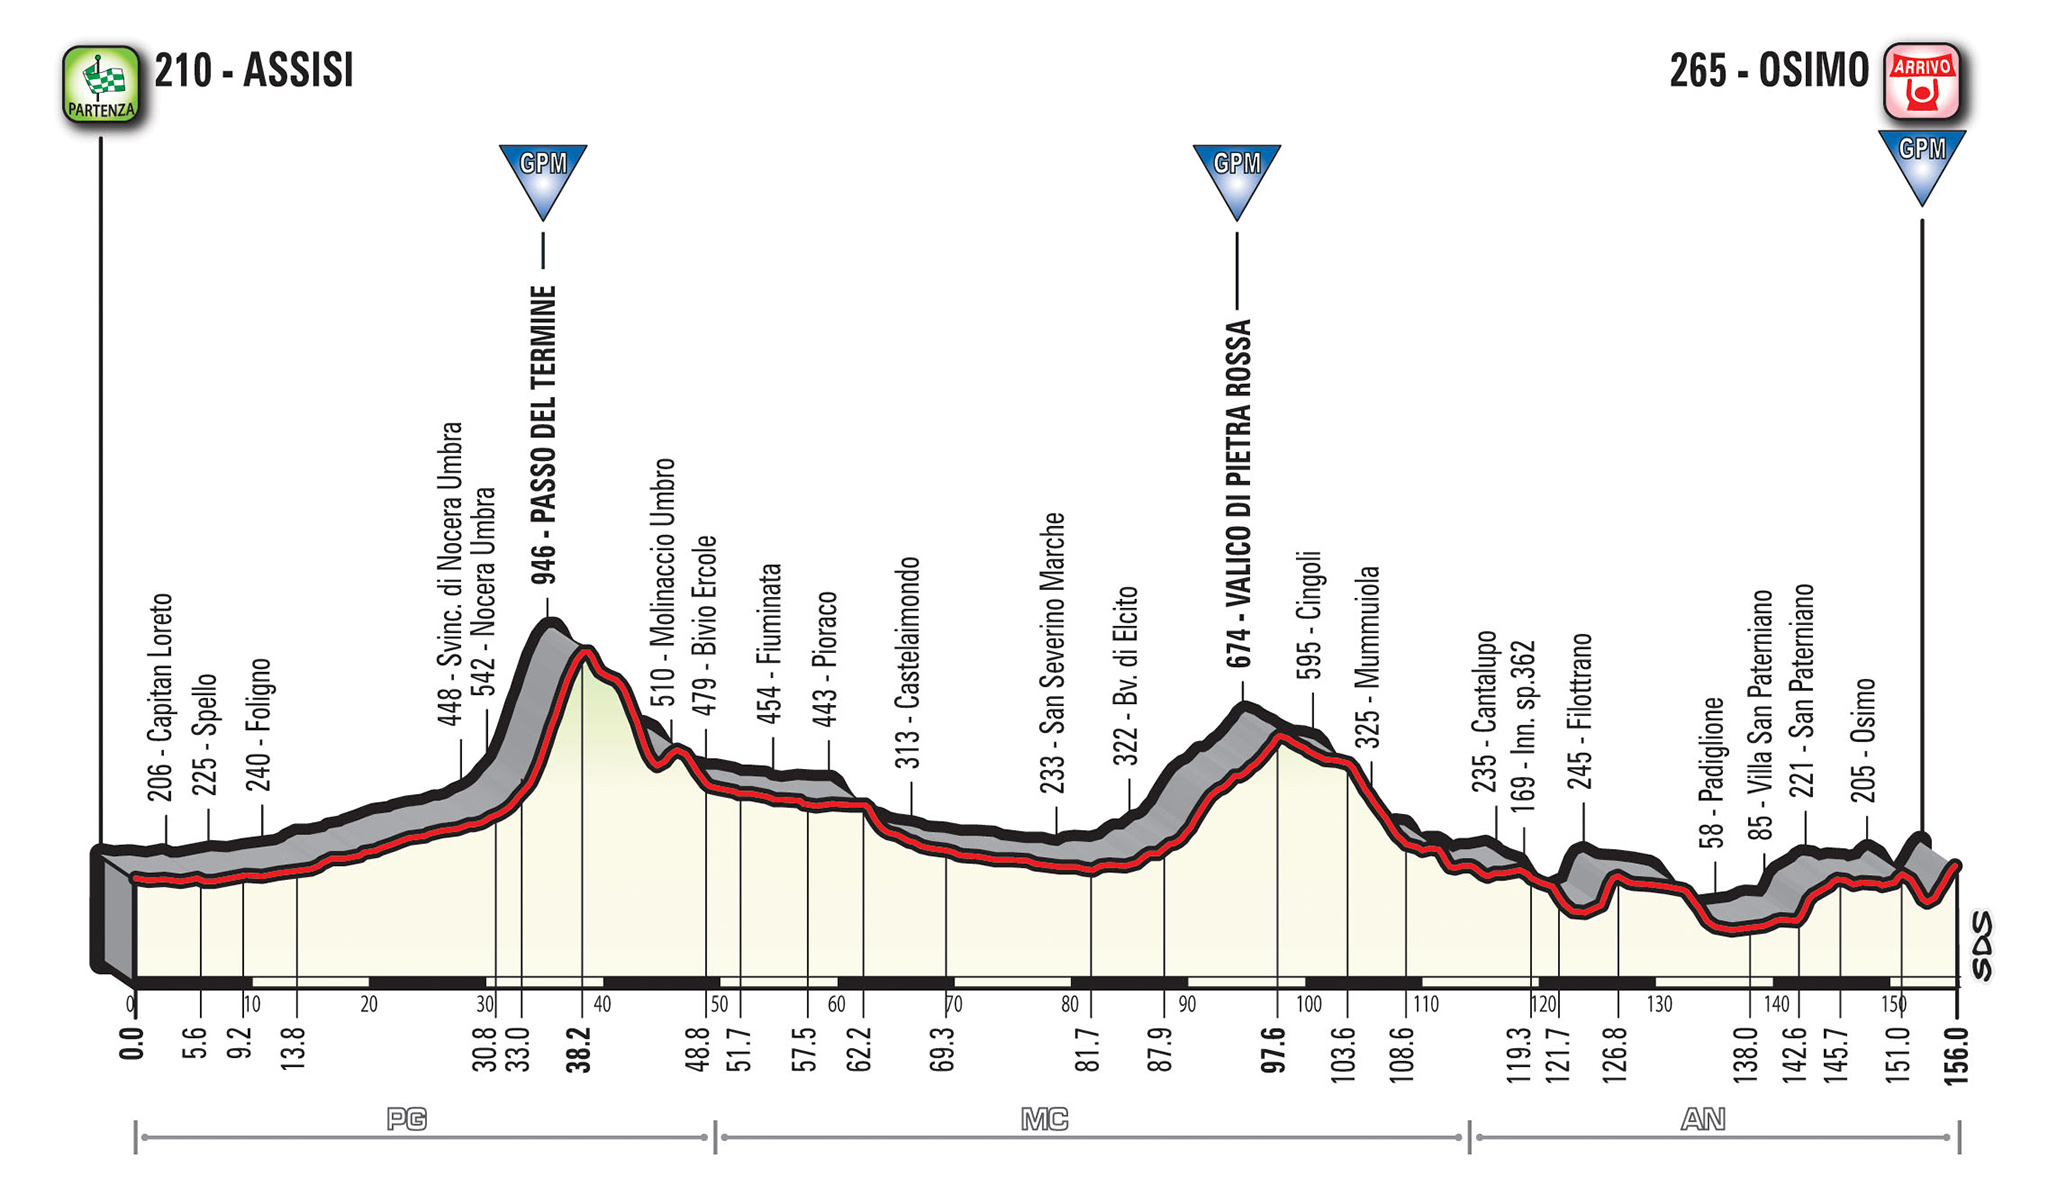 profil 11. etapu Giro d'Italia 2018